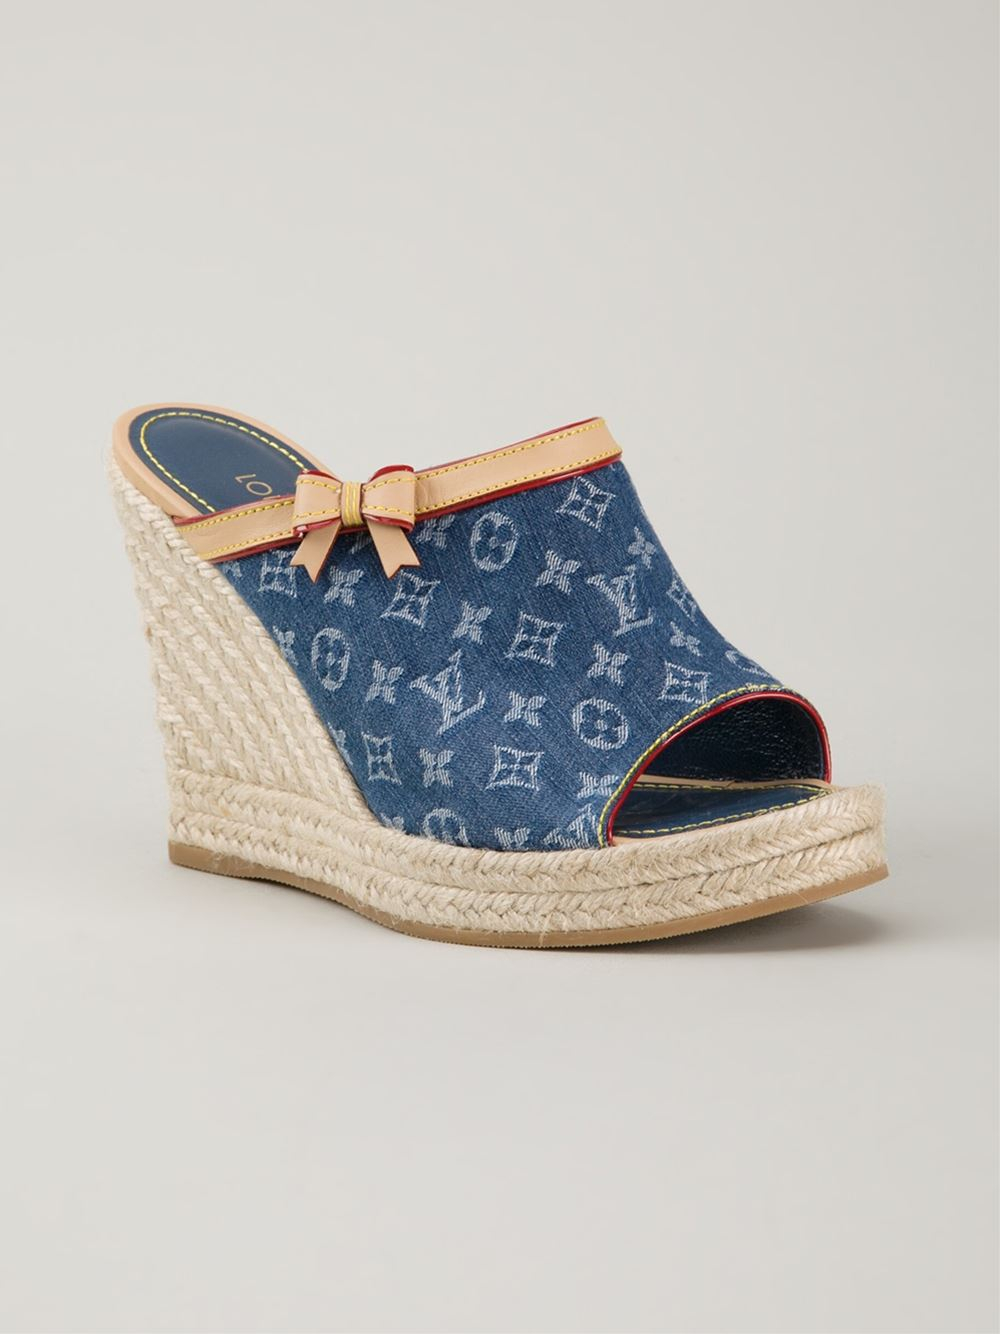 Louis Vuitton - Monogram Multicolore Canvas Wedge Sandals Blanc/Blue 41